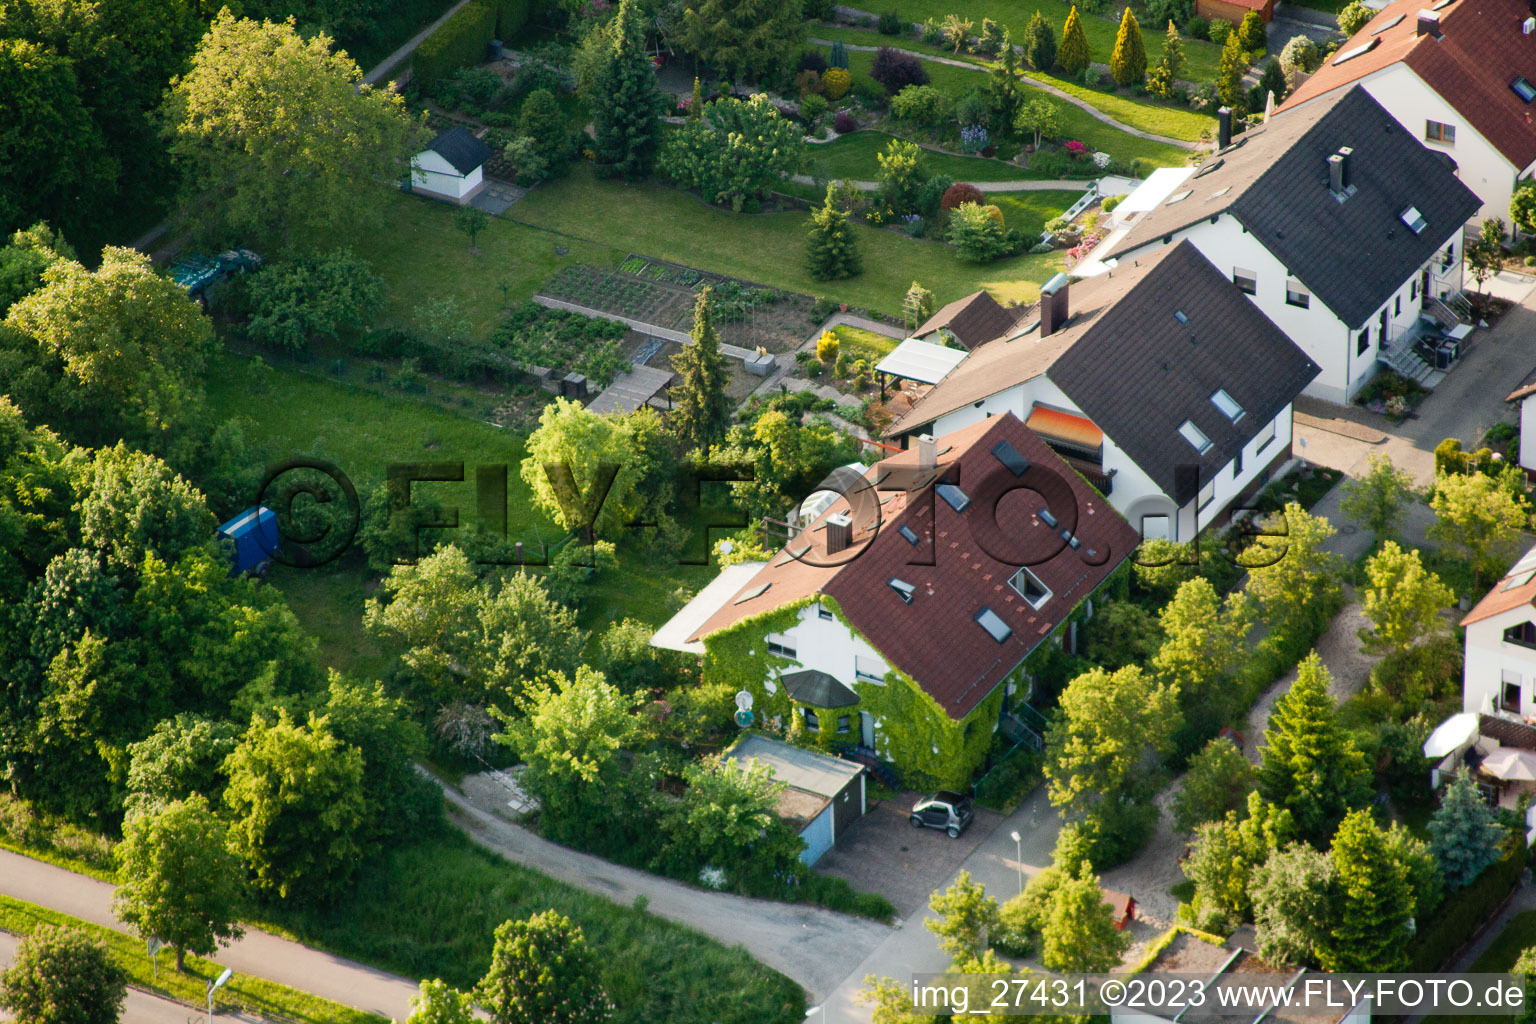 Durlach Aue in Karlsruhe im Bundesland Baden-Württemberg, Deutschland aus der Luft betrachtet